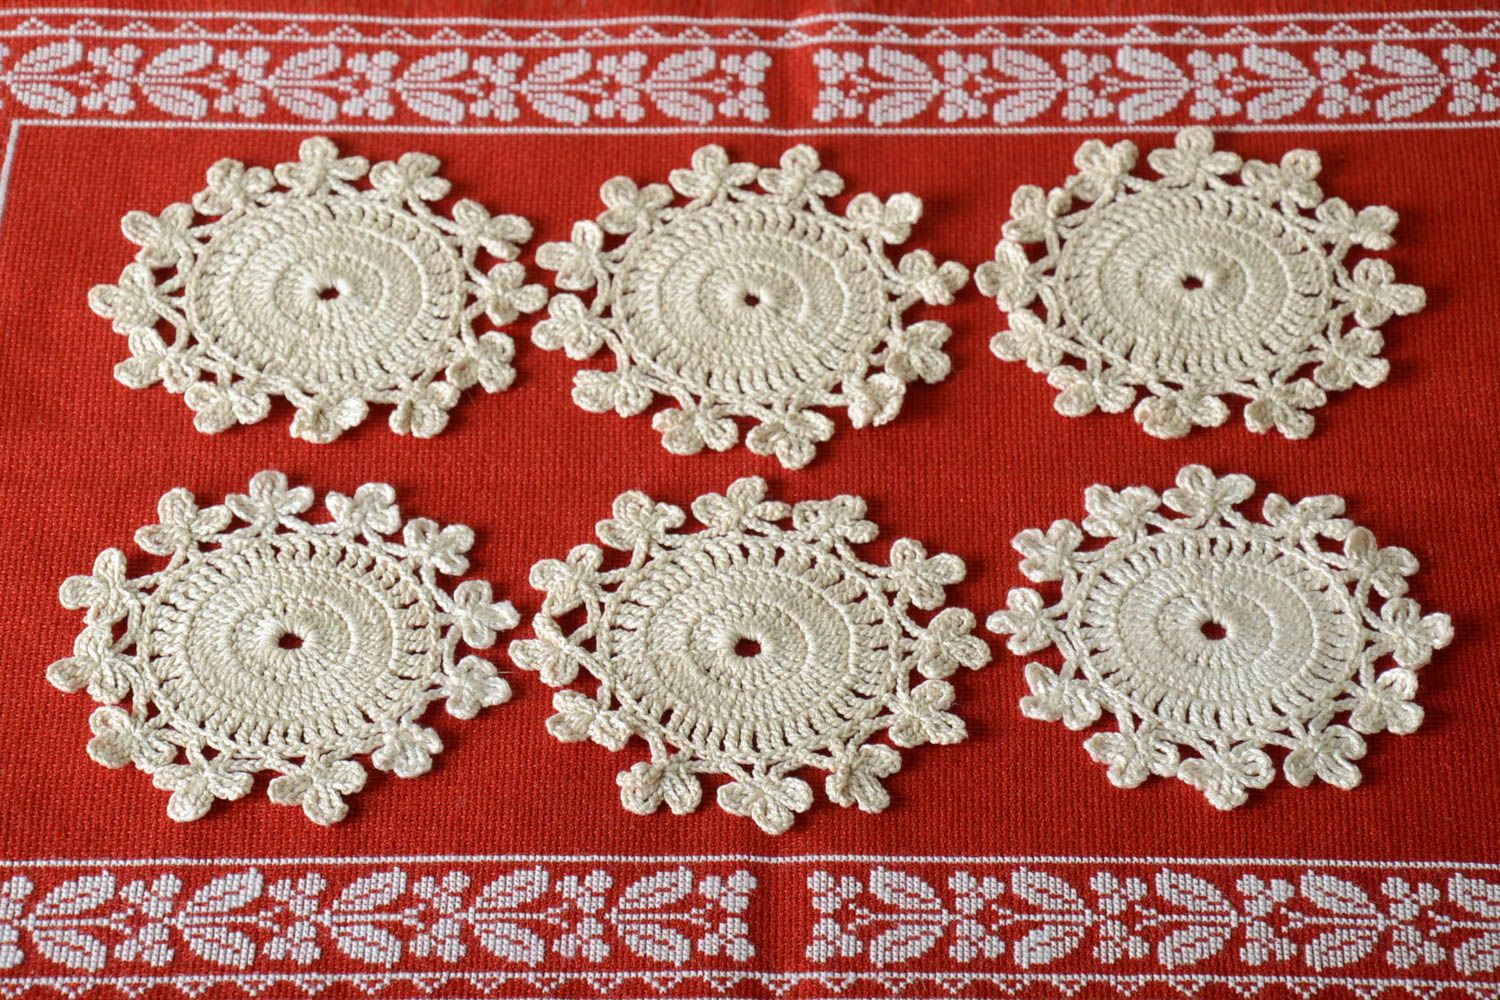 Crocheted decorative napkins 6 white small napkins home decor textile photo 1